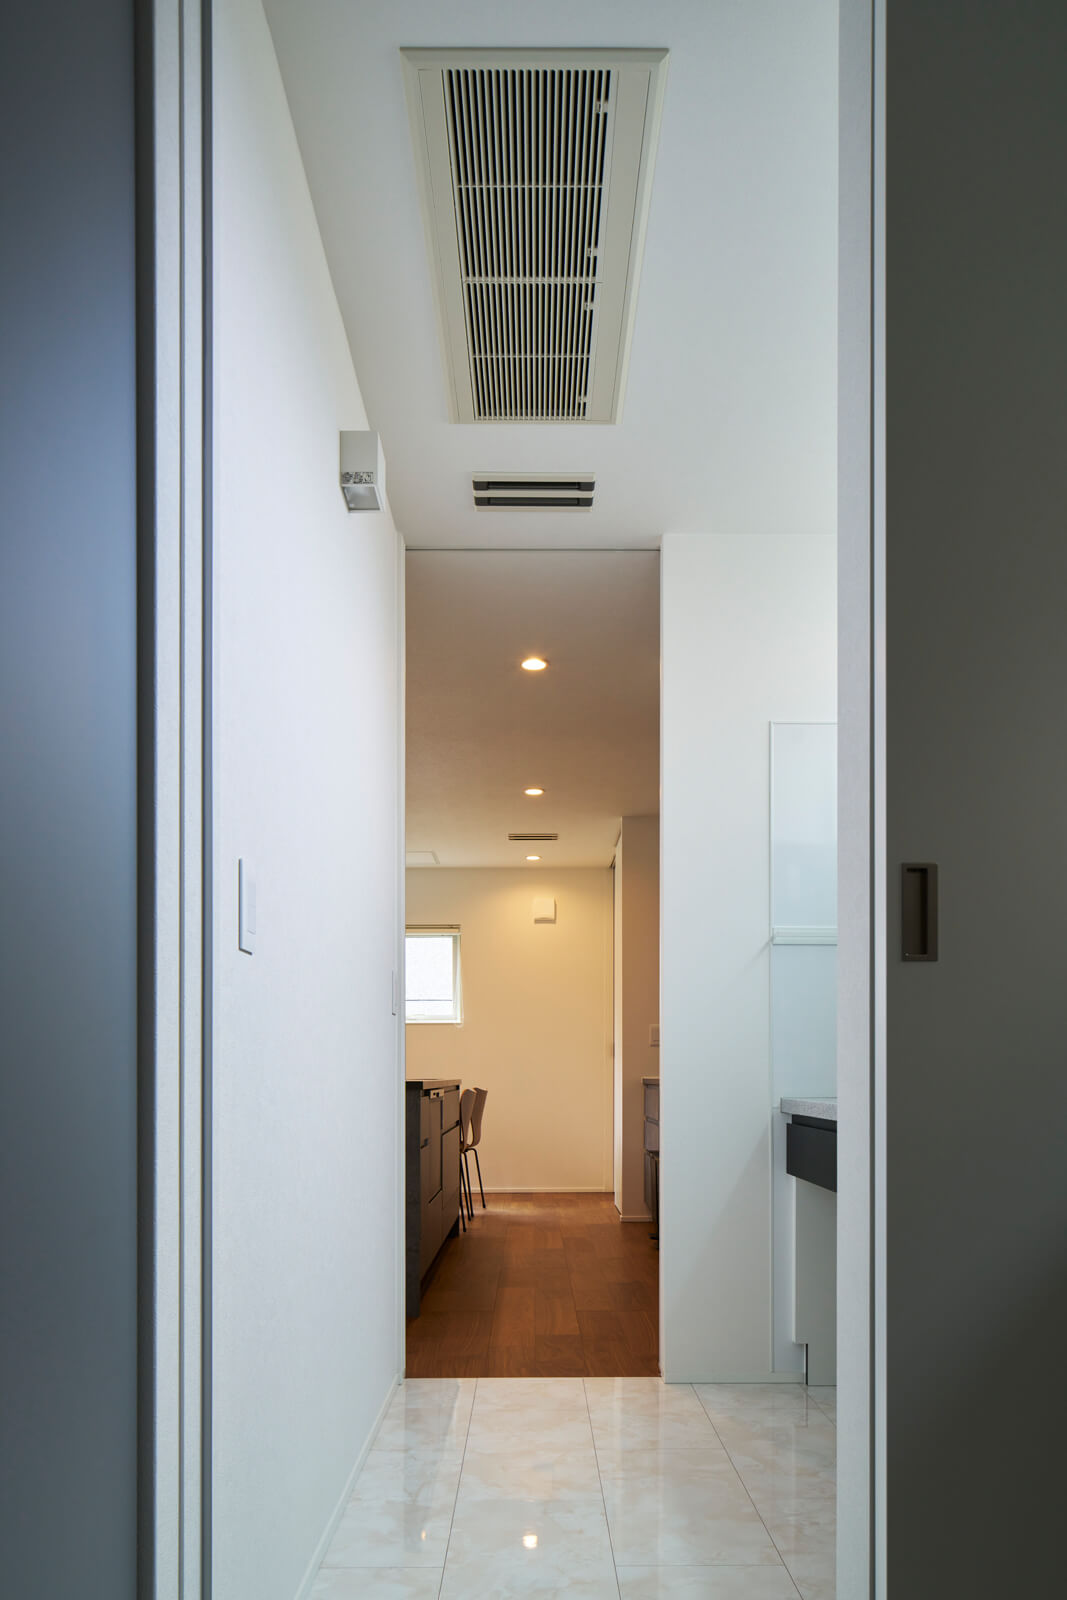 玄関の上に設置されたメインのエアコン。ダクトを通して家中に温風や冷風を効率よく届けるため、各部屋にエアコンを設置するより半分以下の消費電力で済むという